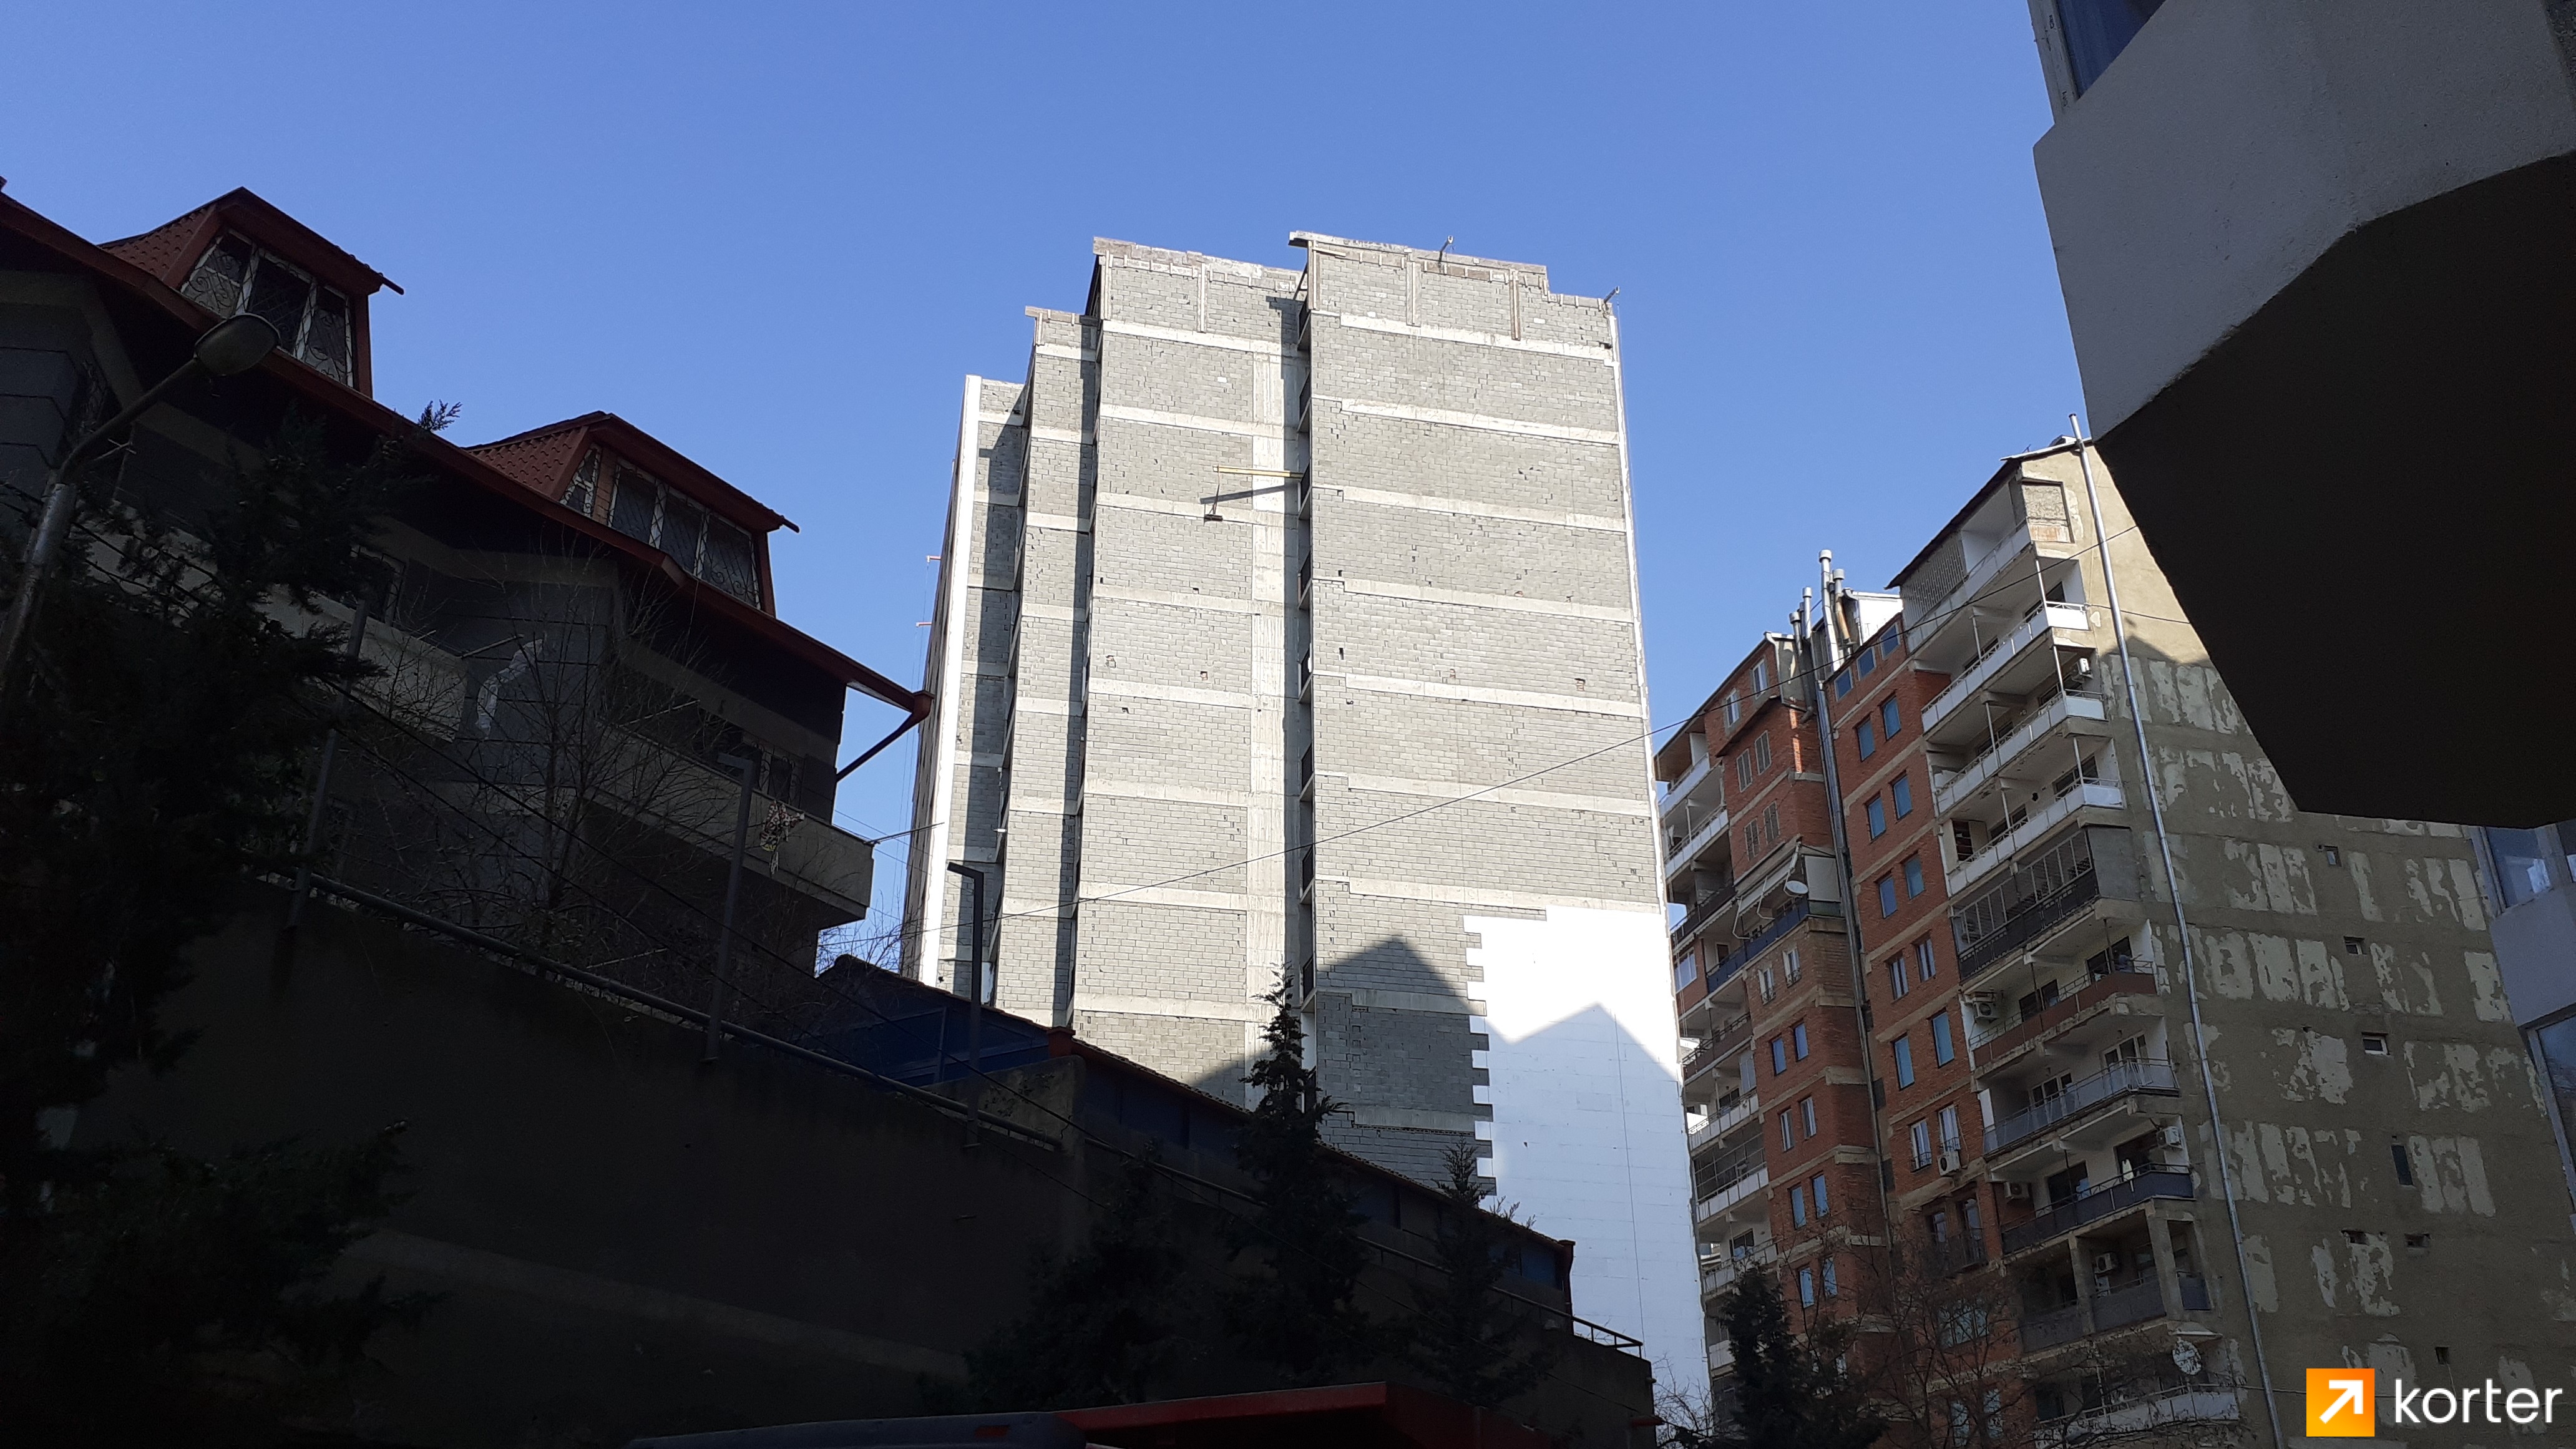 Construction progress Binadari Zhvania - Angle 3, February 2020